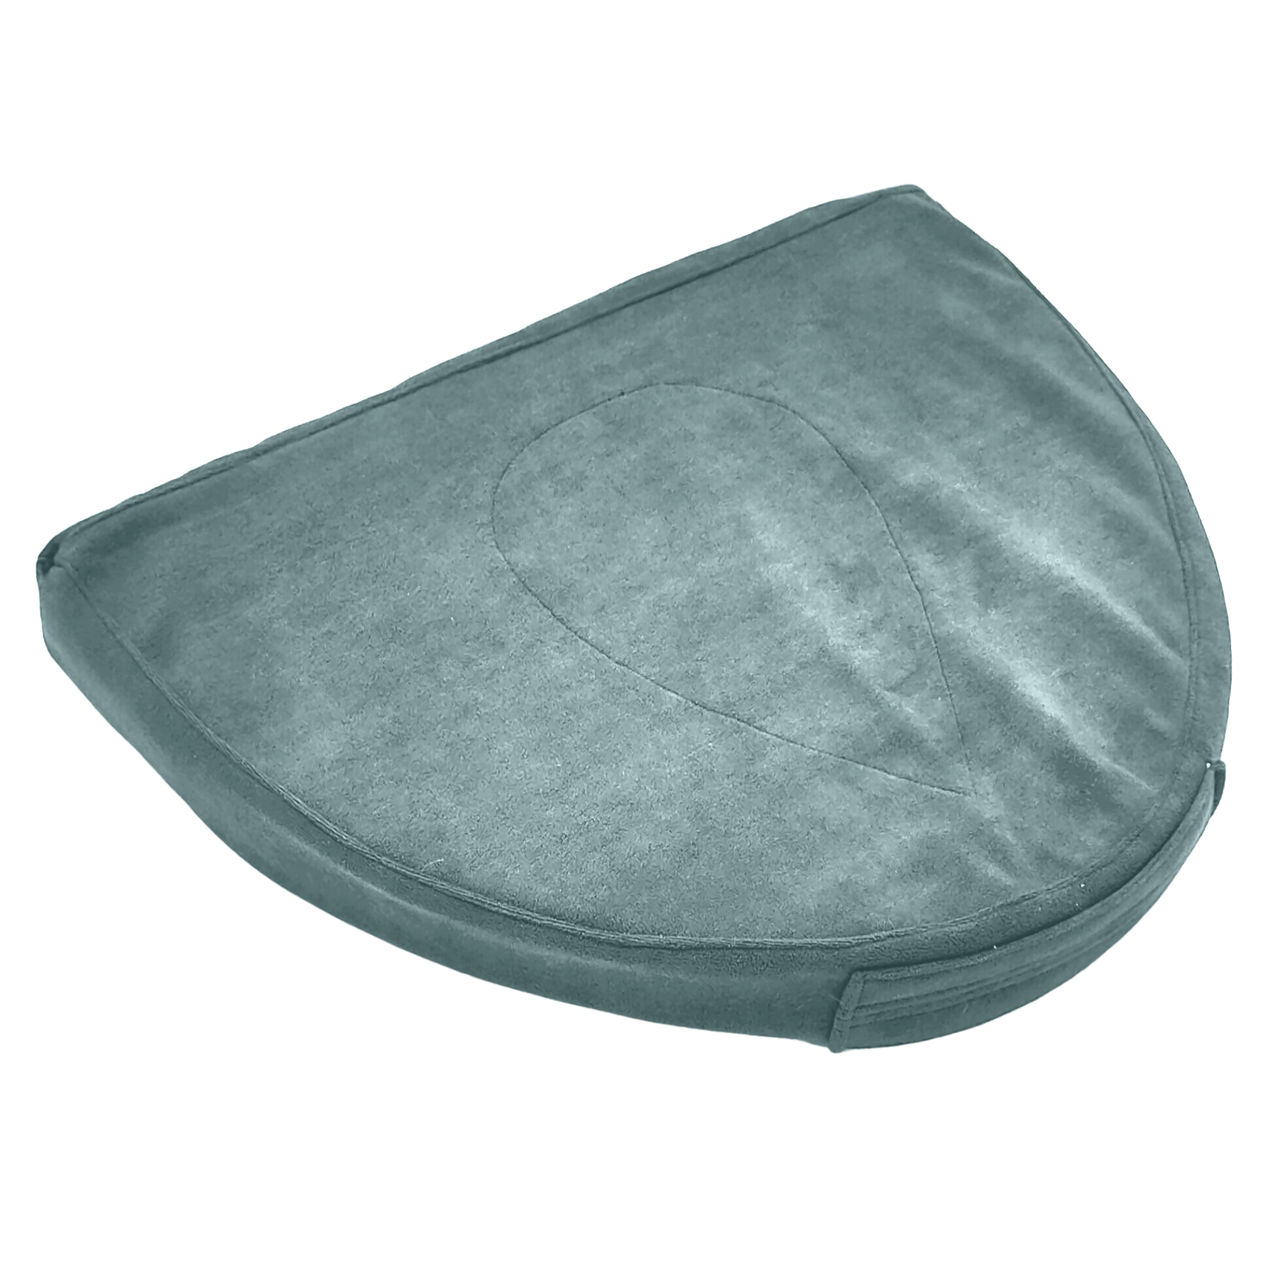 Массажная подушка "Шершень" для репродуктивной системы. Цвет серый